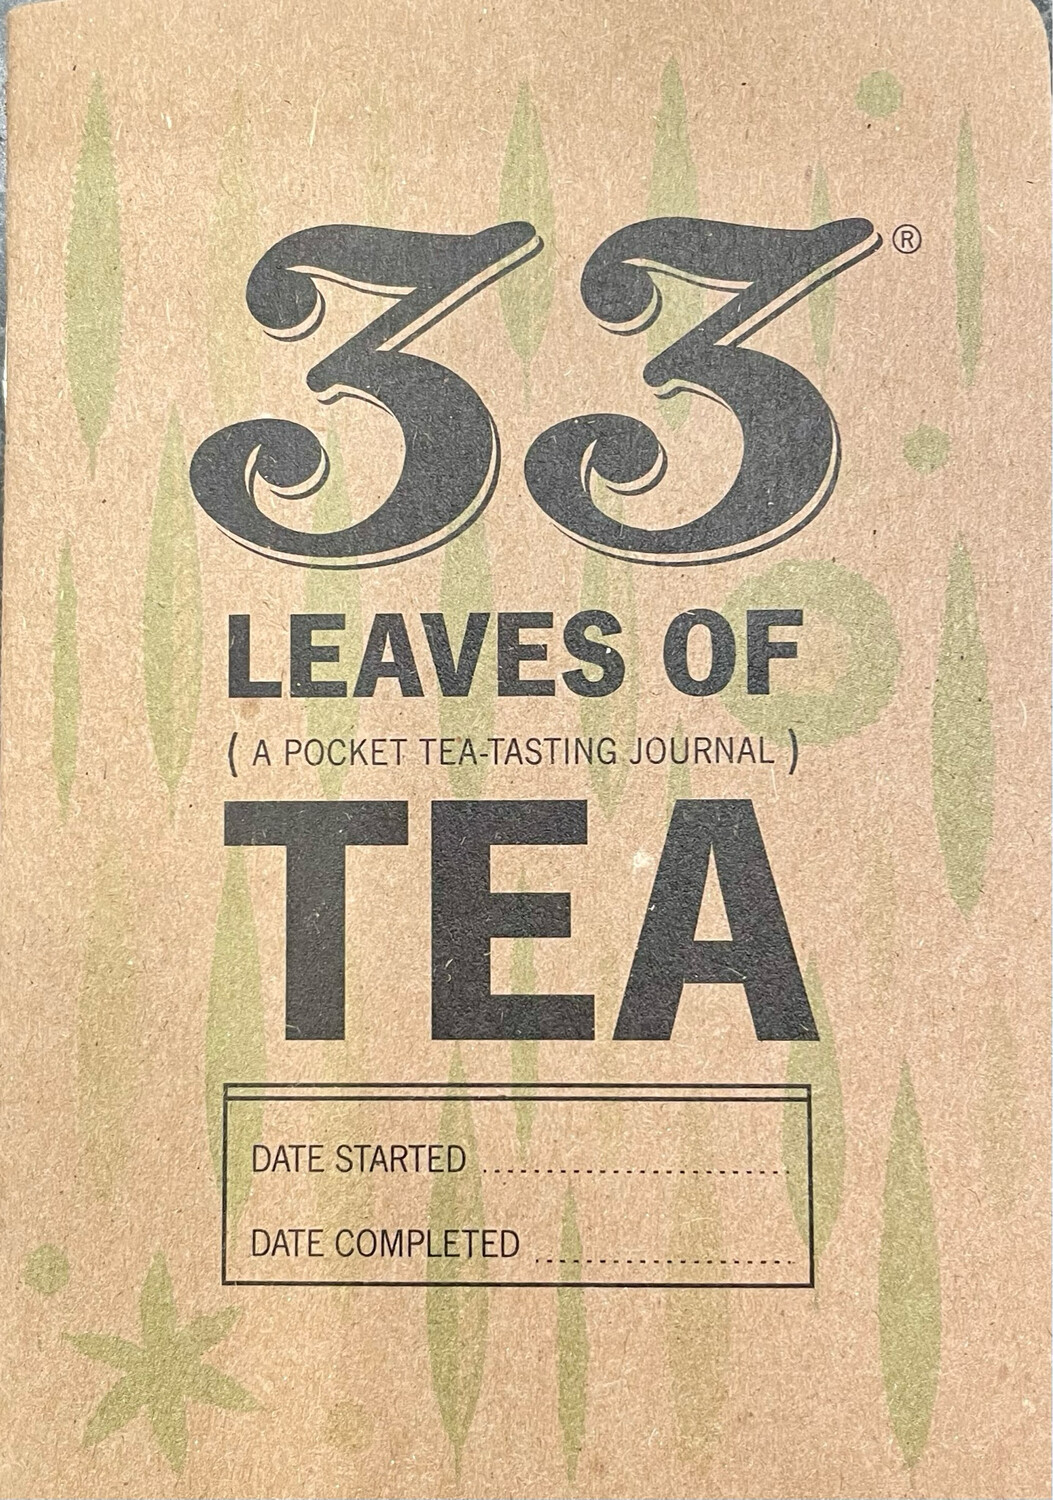 33 Leaves of Tea